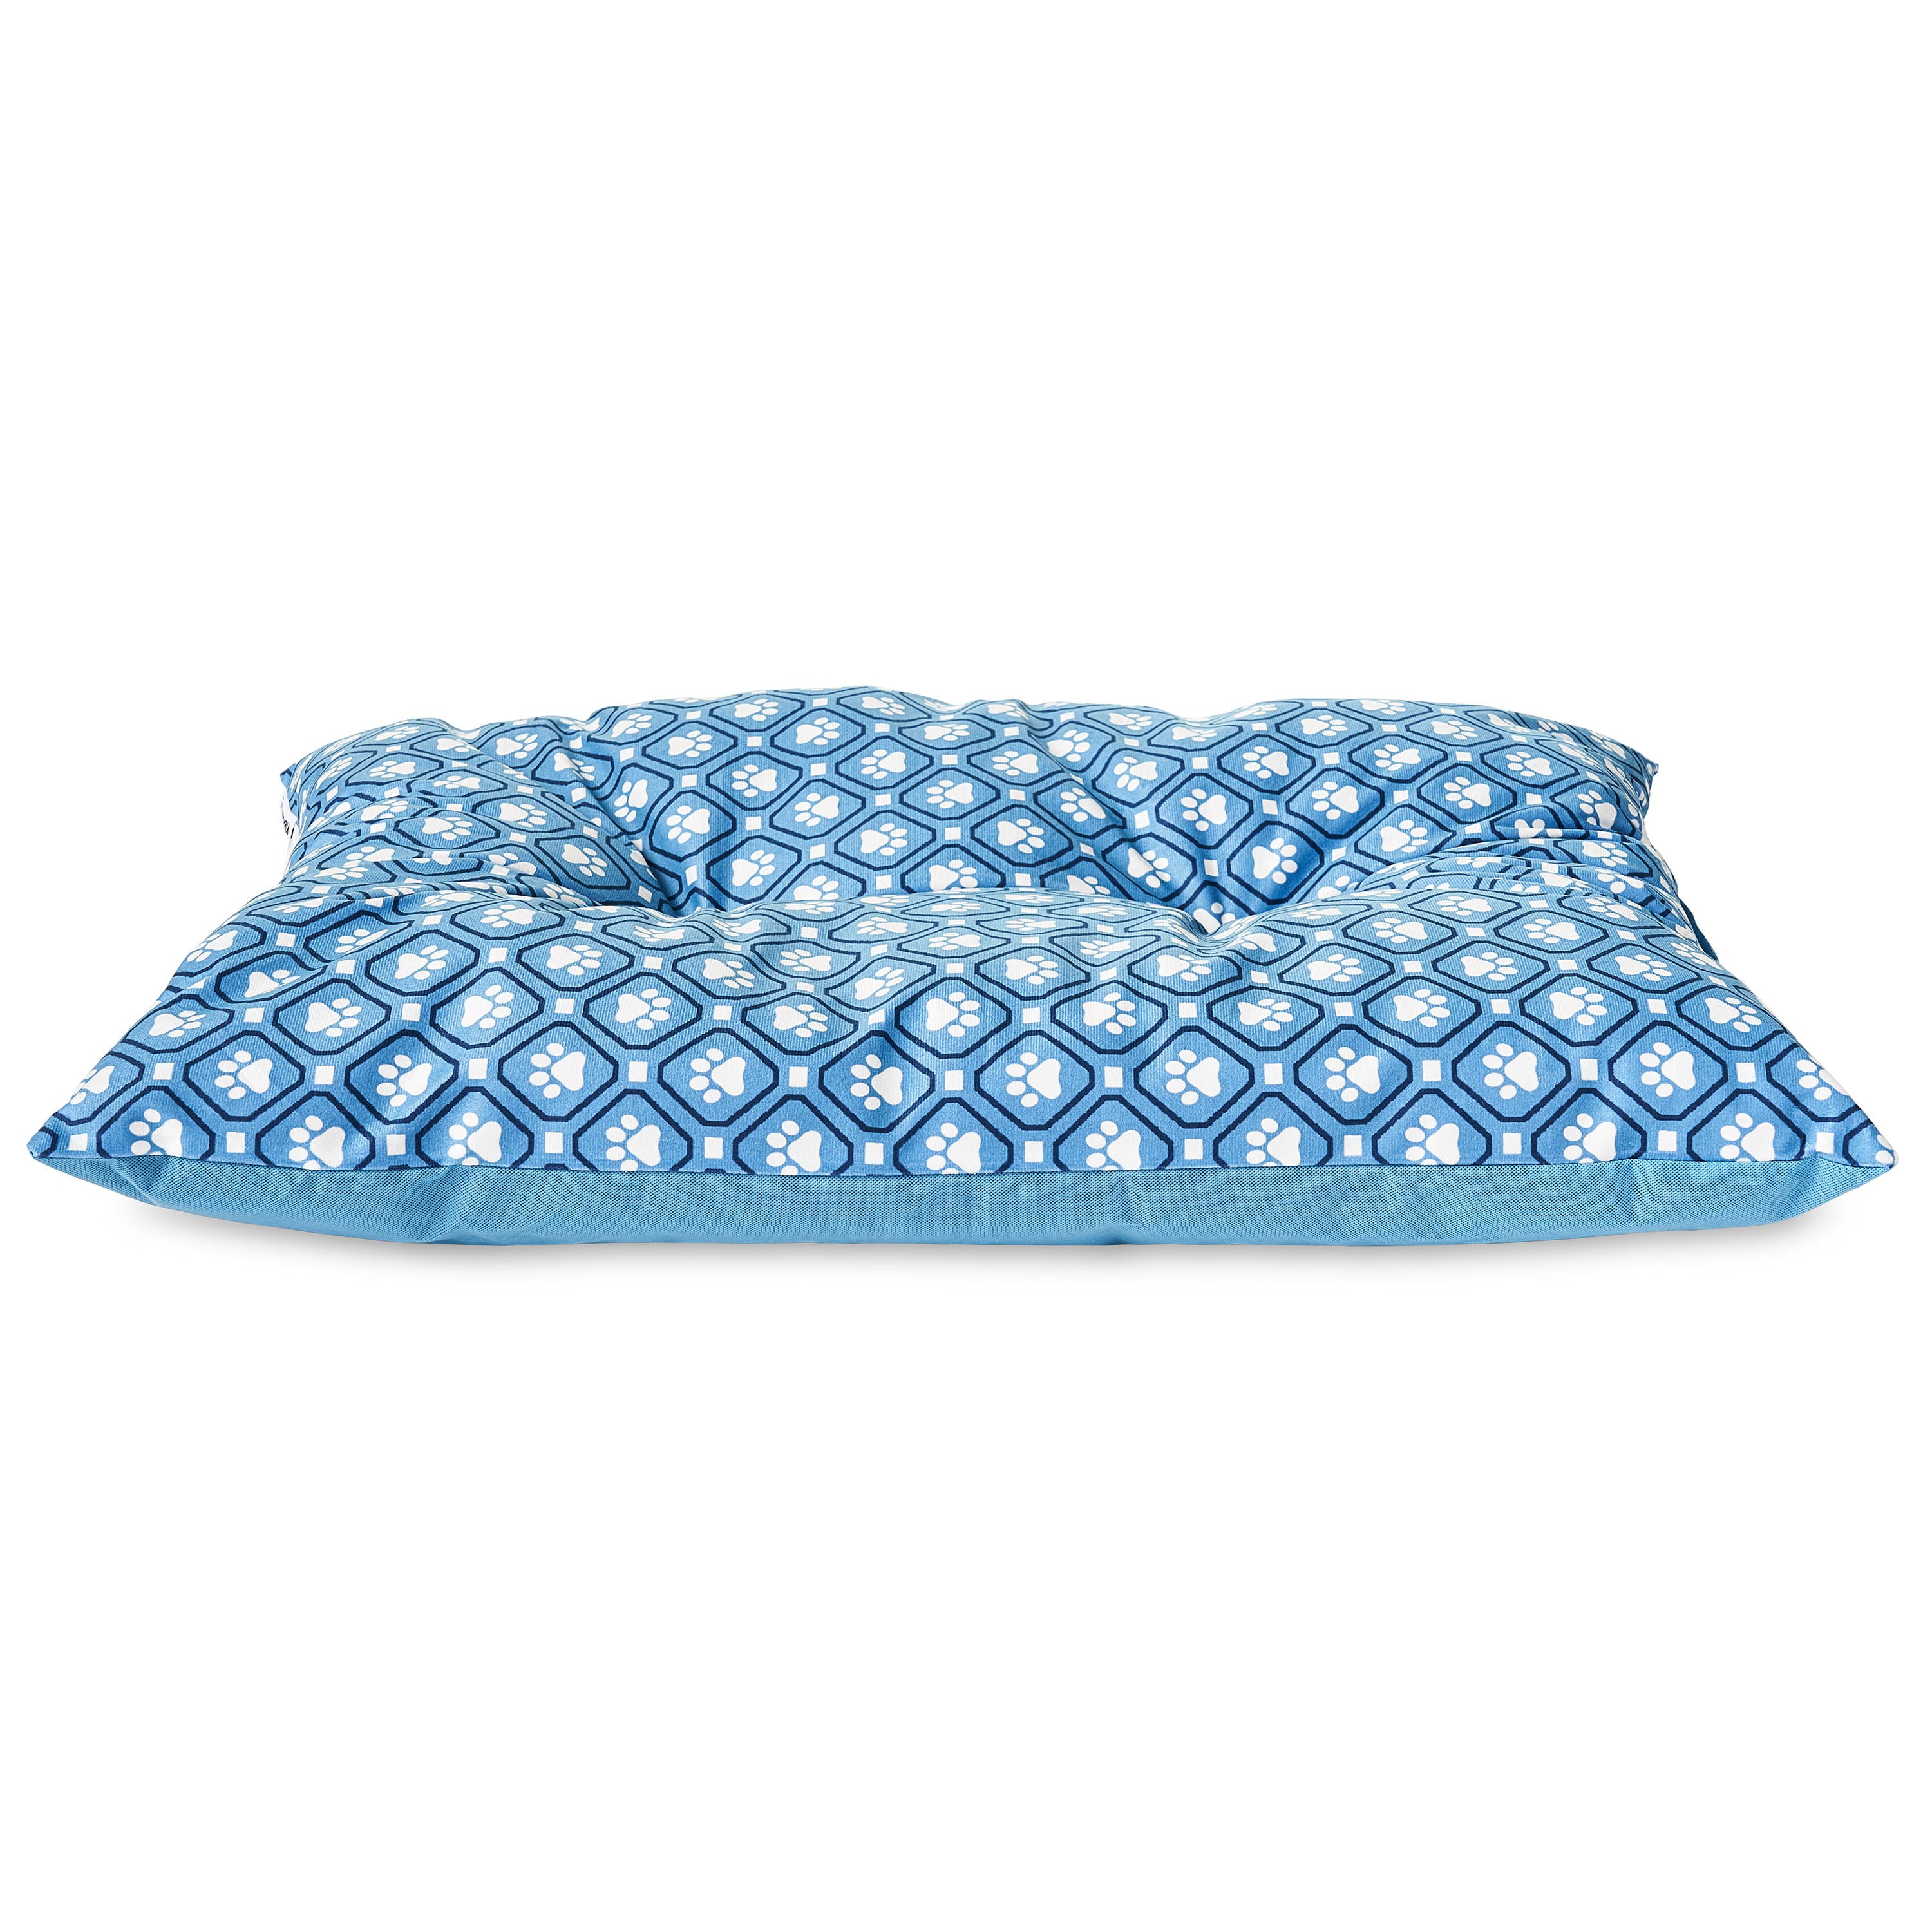 Vibrant Life Medium Tufted Plush Dog Bed， Blue Paw